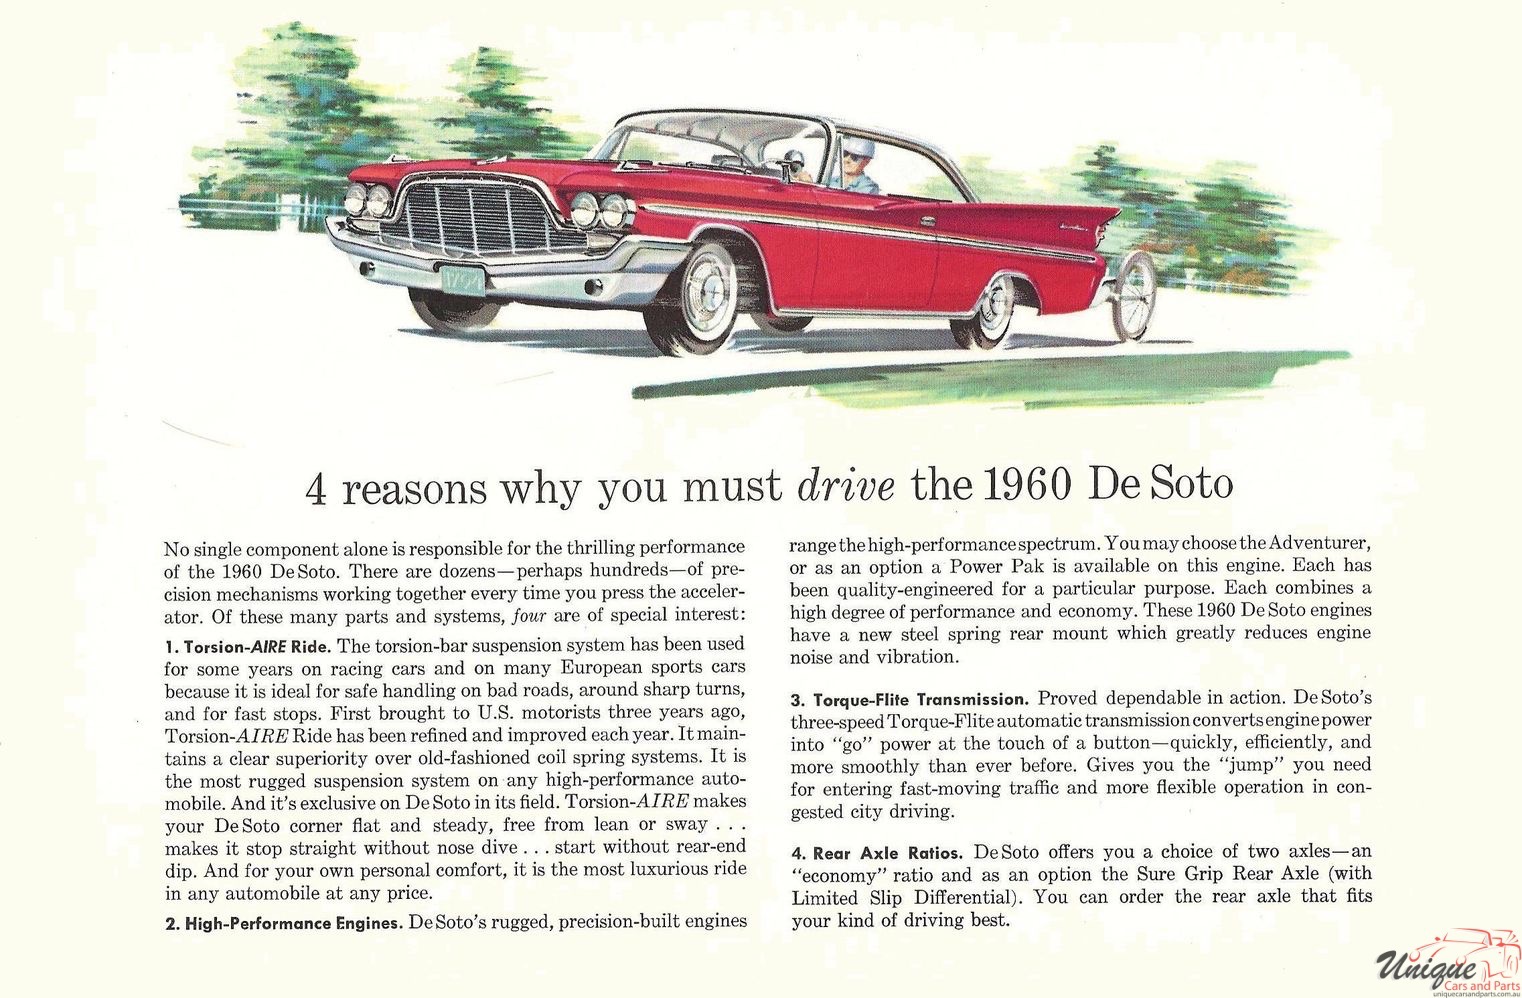 1960 DeSoto Canadian Brochure Page 1